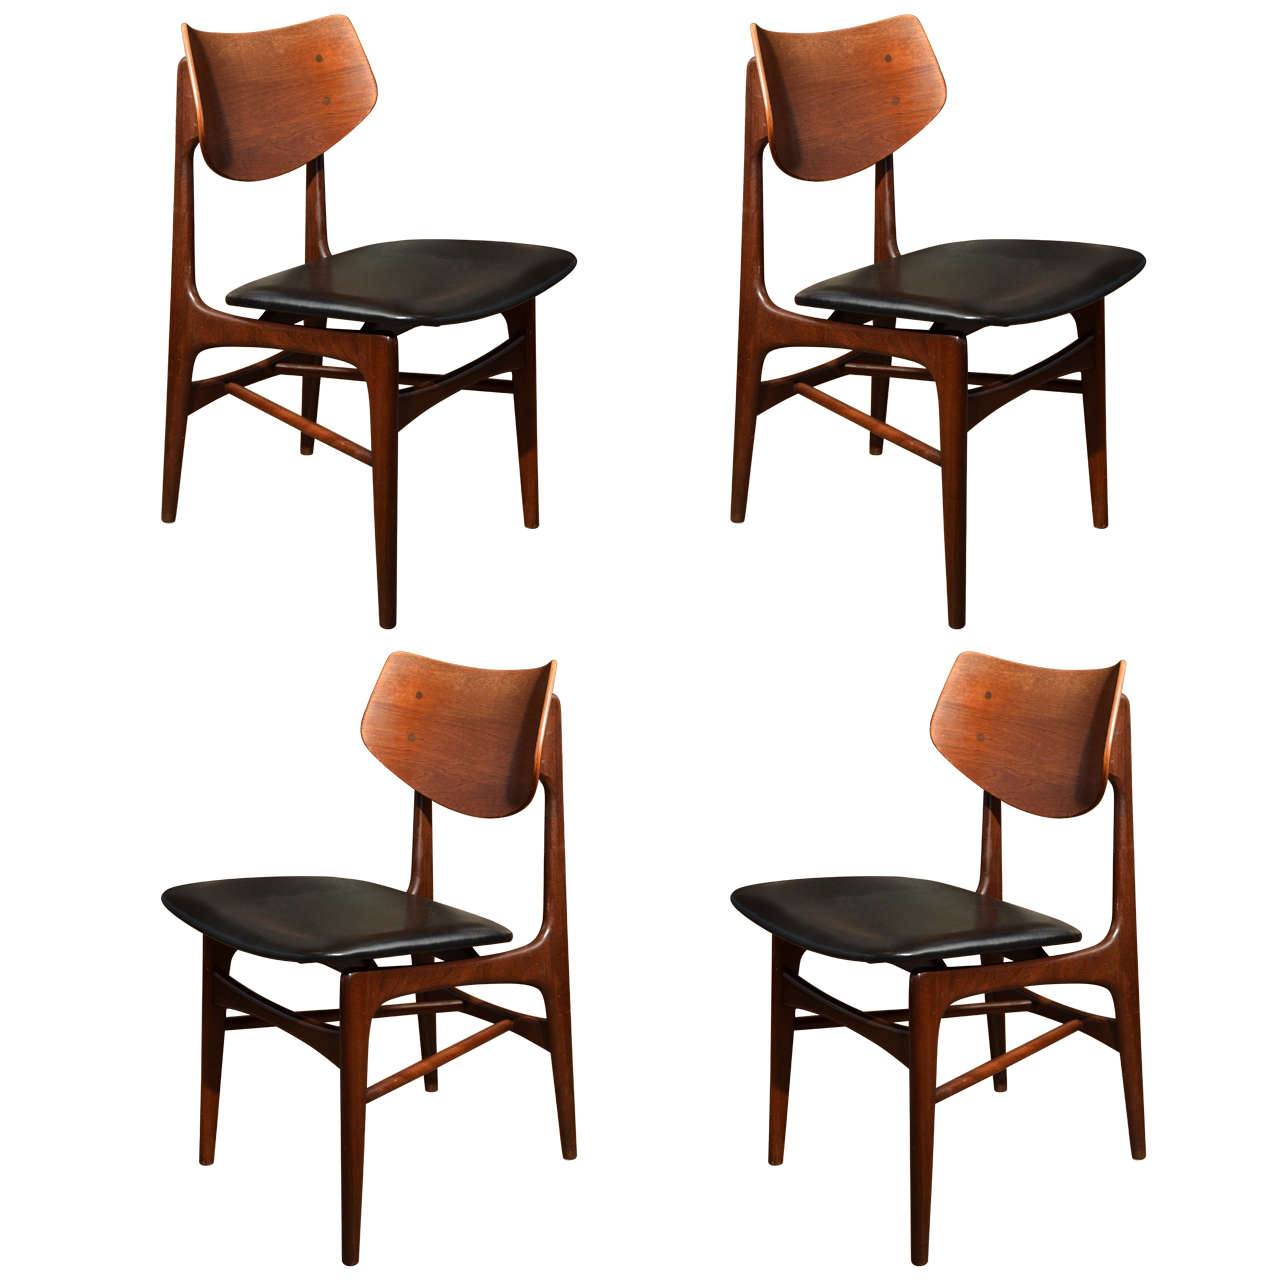 Set of four Scandinavian shield back chairs